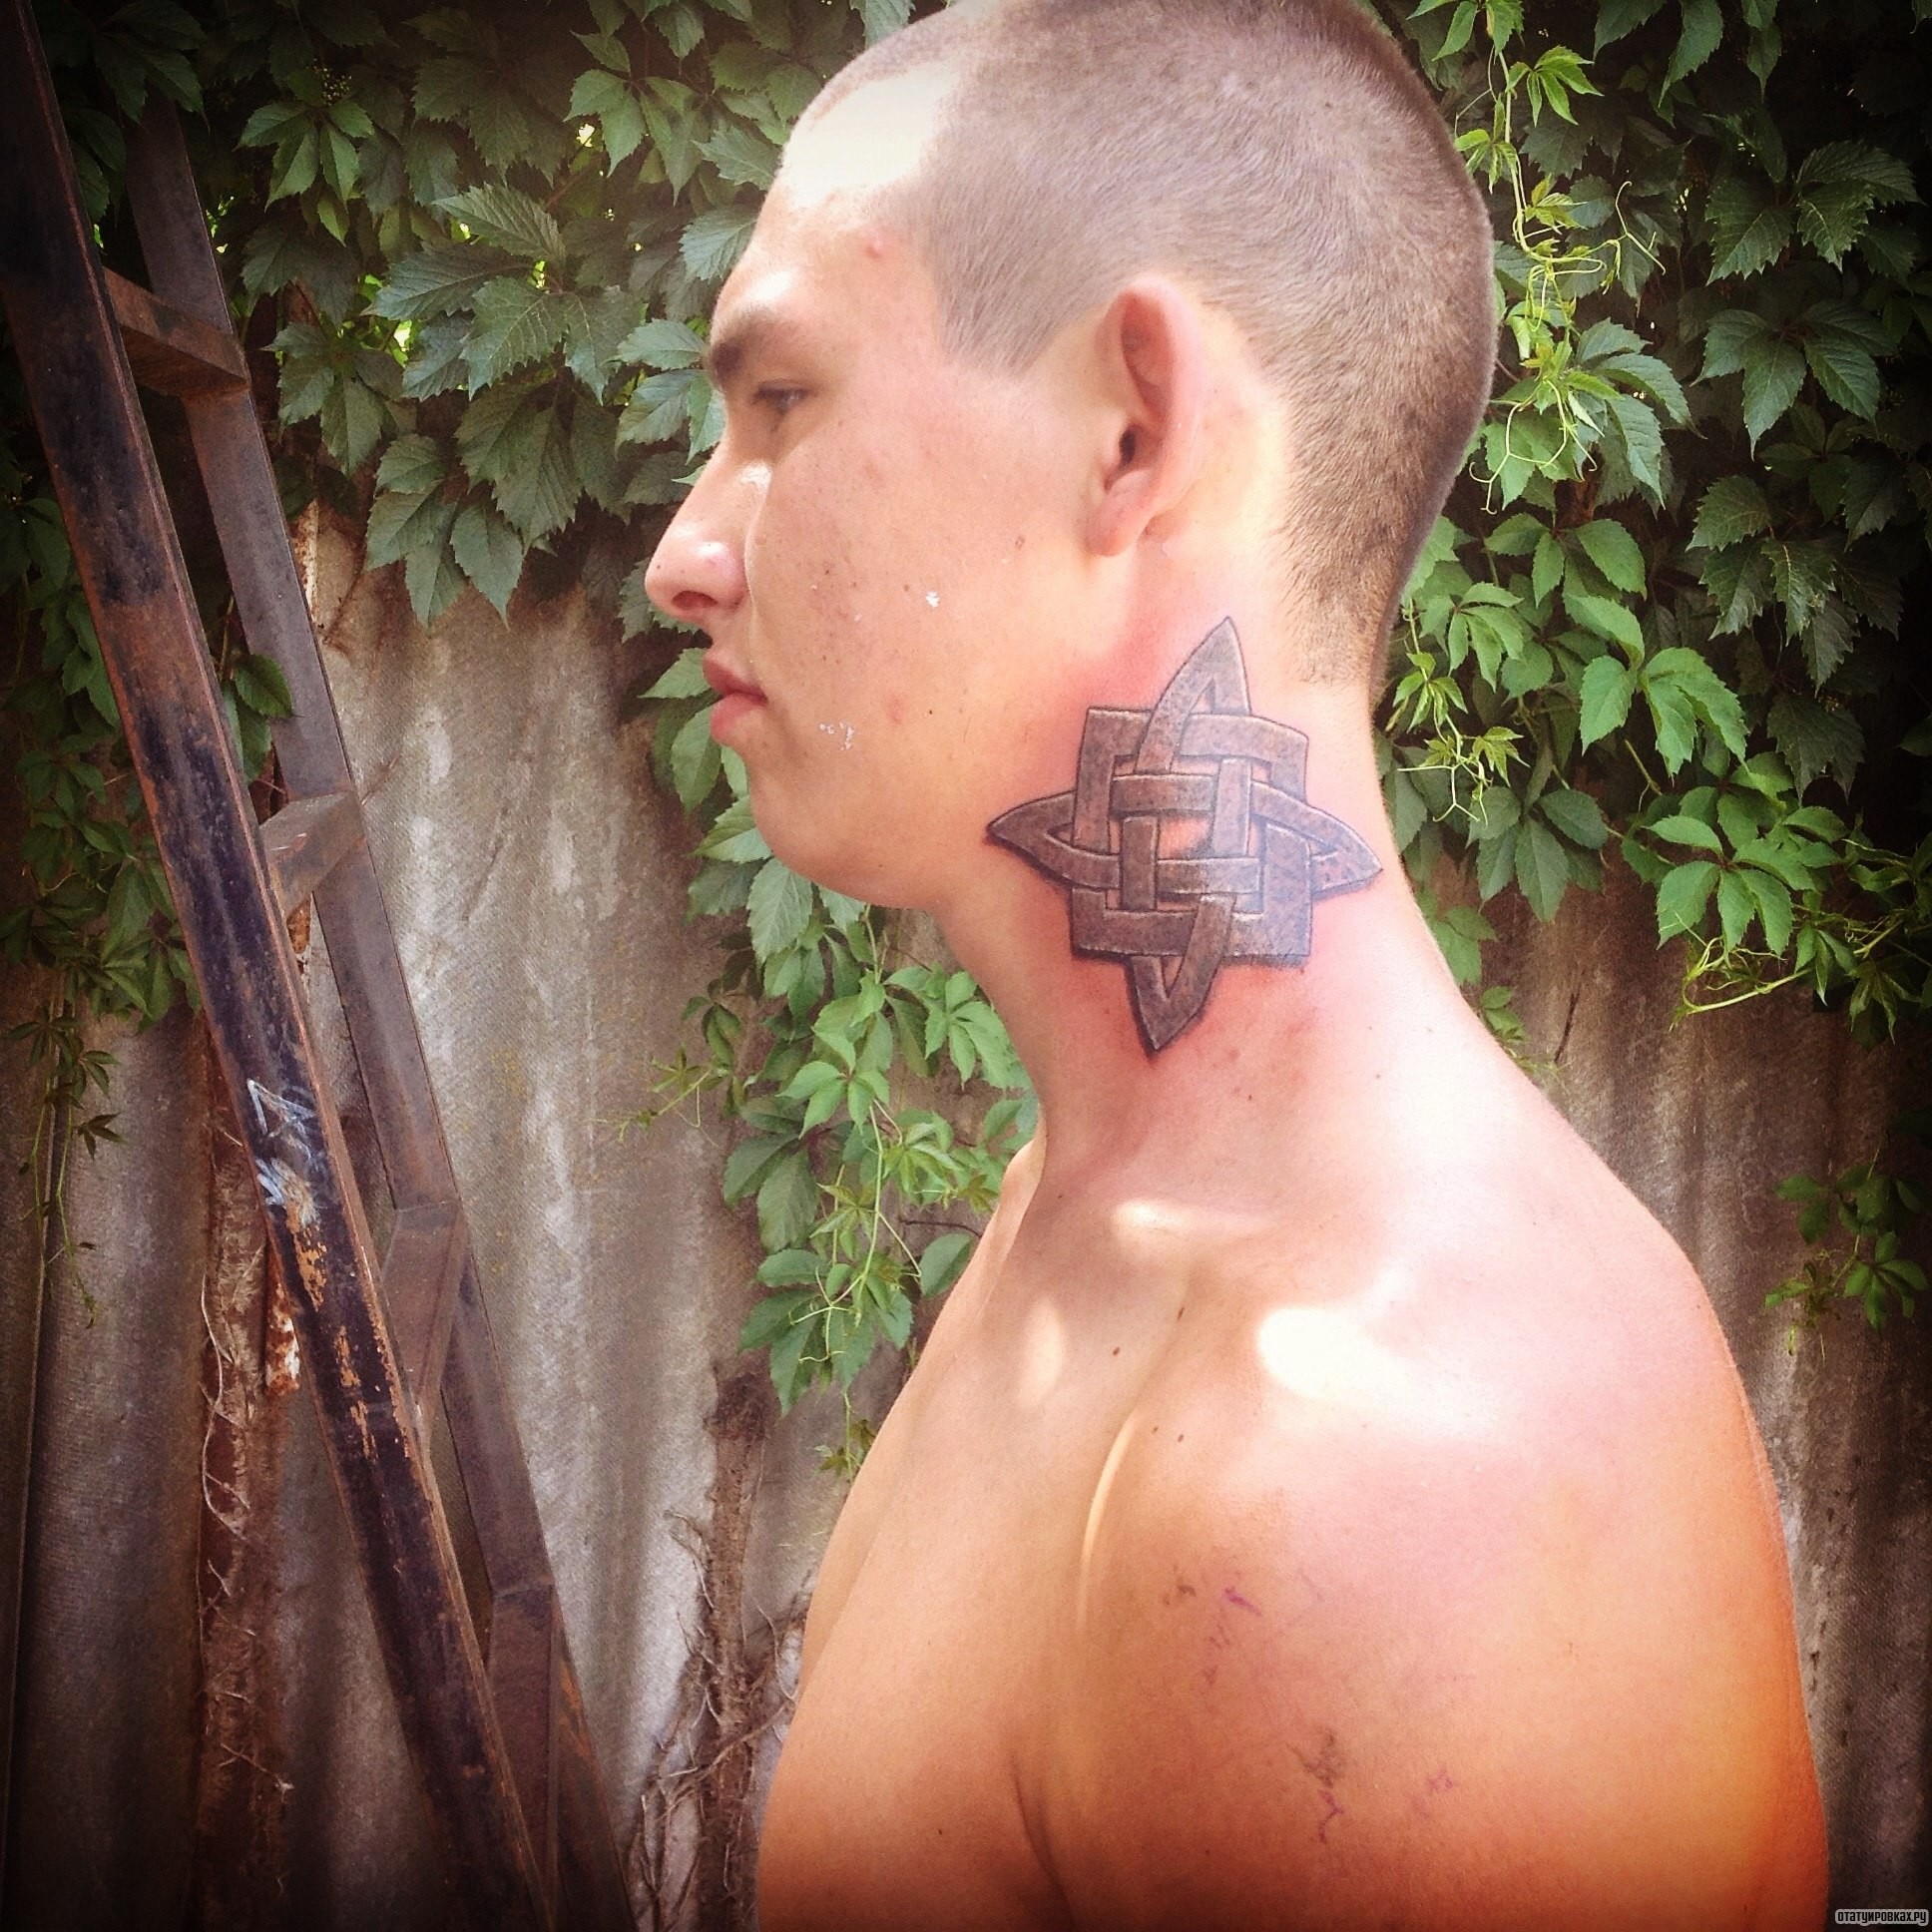 Фотография татуировки под названием «Узор кельтский»